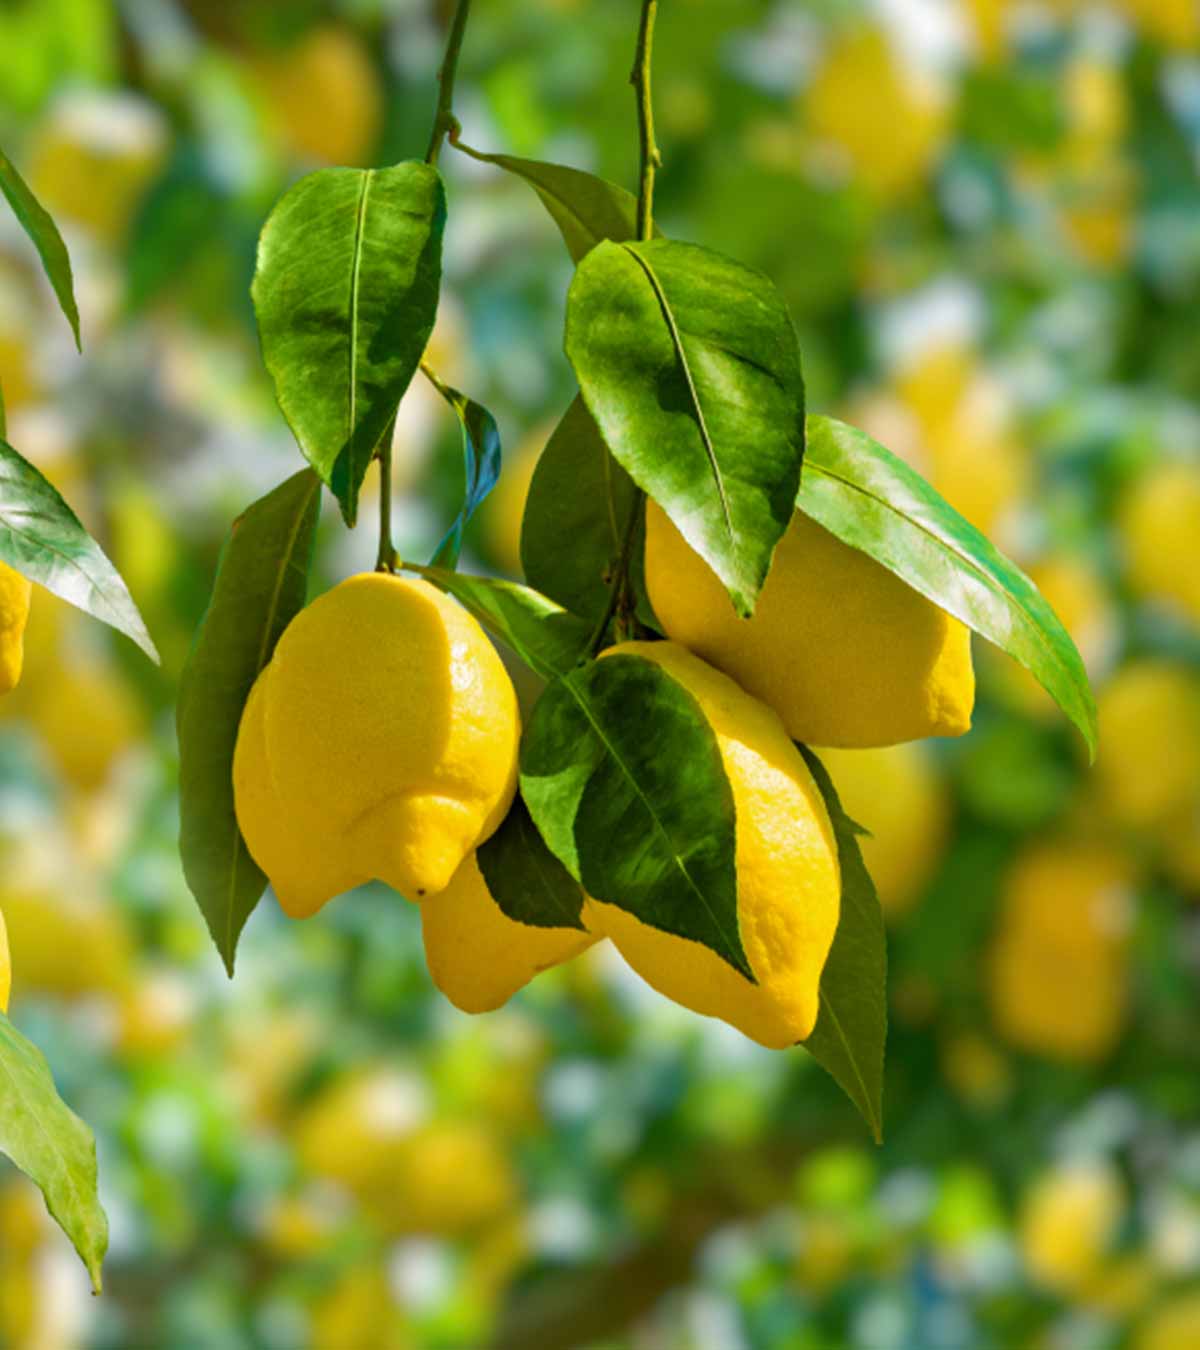 Is Lemon Good For Pregnancy?